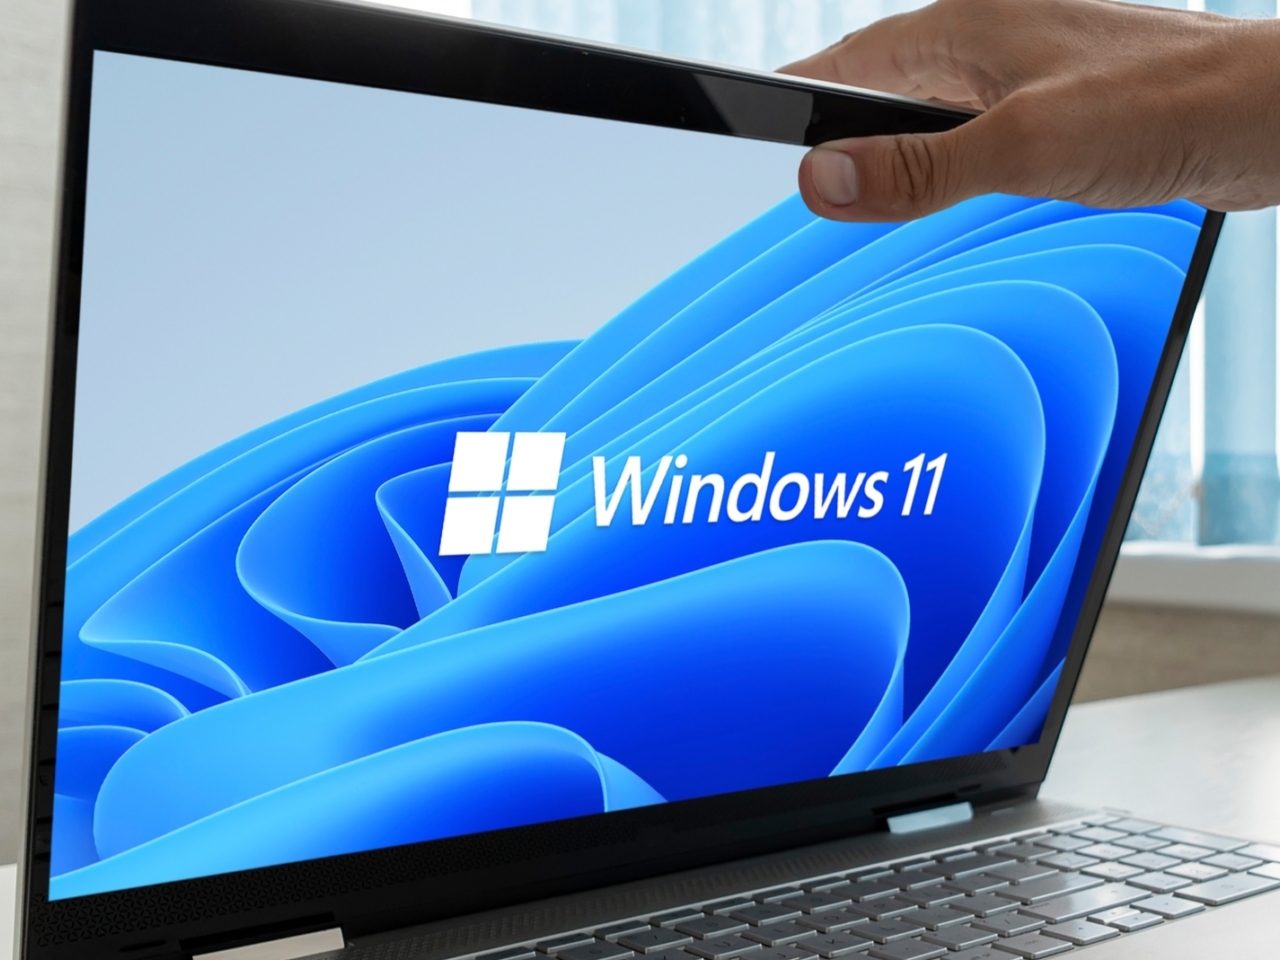 「Windows 11」へのアップグレード、セキュリティがカギとなる理由